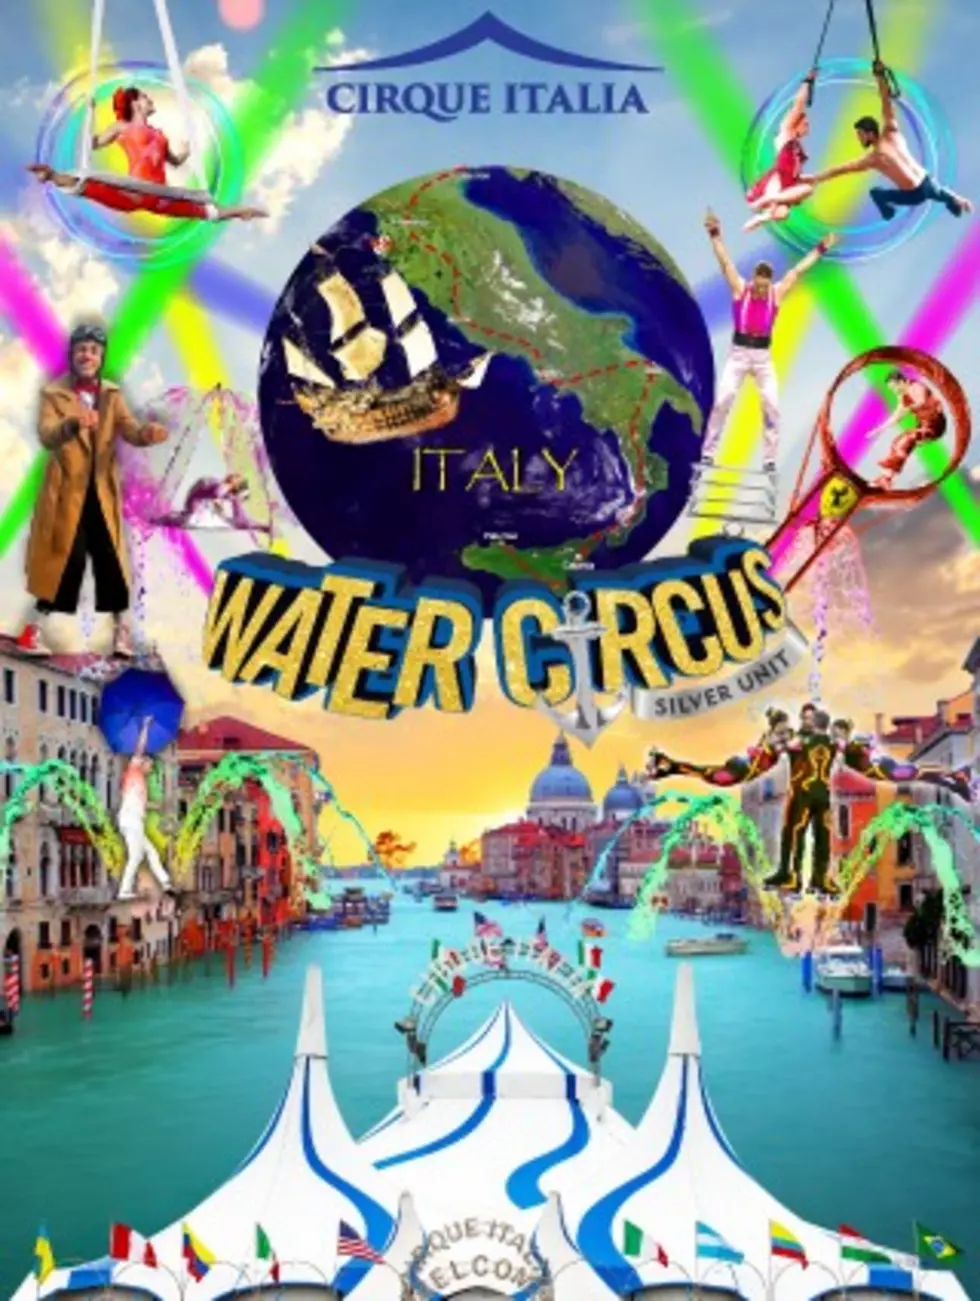 KDAT Welcomes Cirque Italia [VIDEOS]